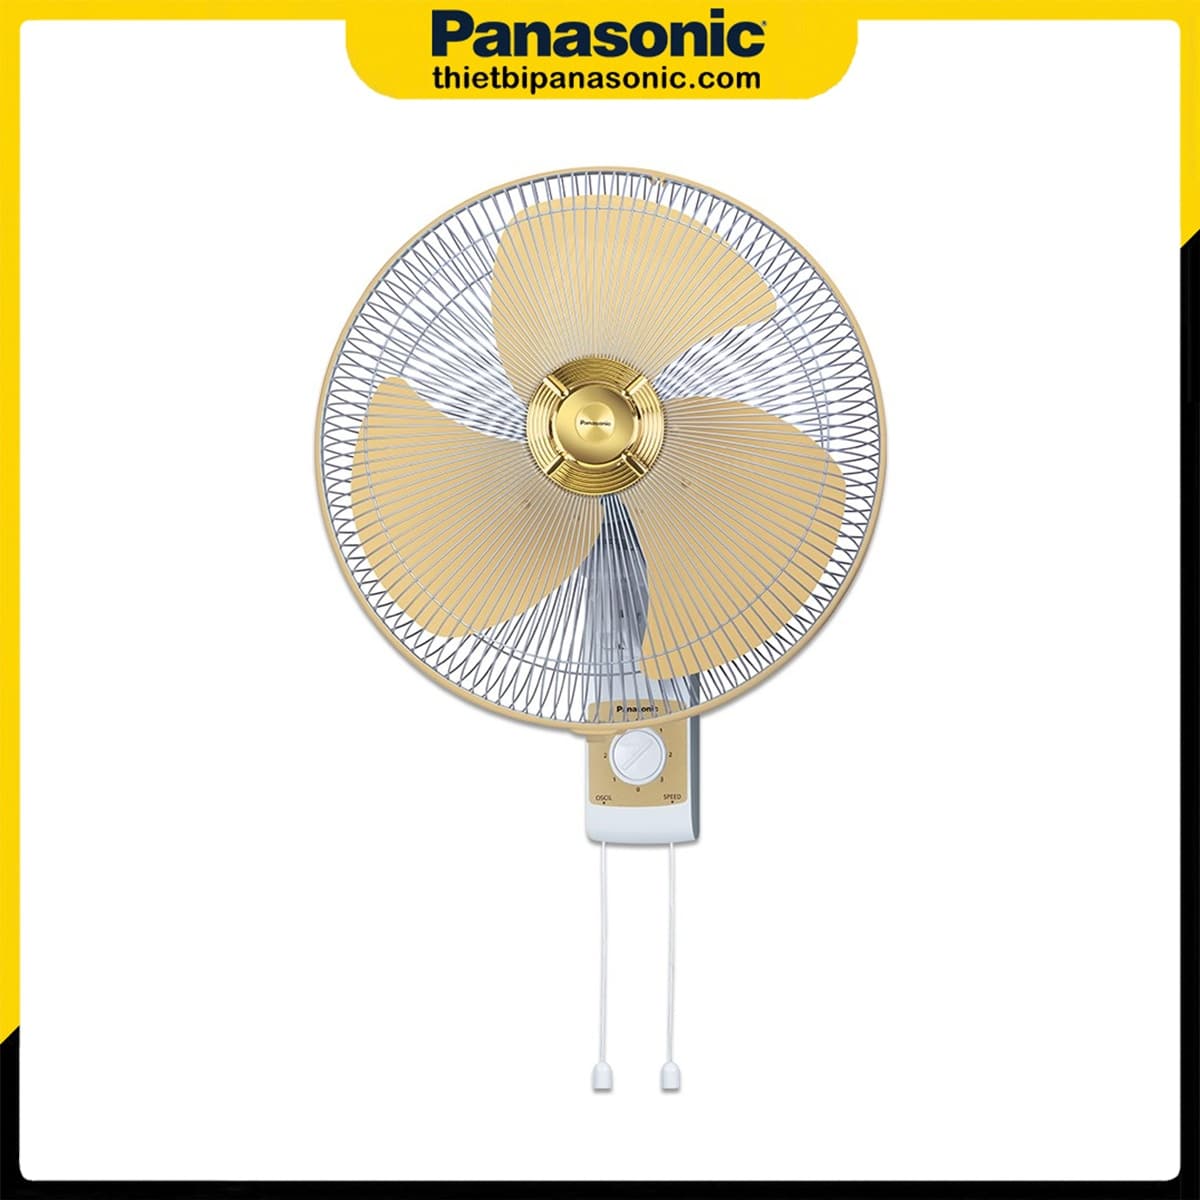 Ngoại hình của Quạt Panasonic treo tường F-409UGO màu vàng kim